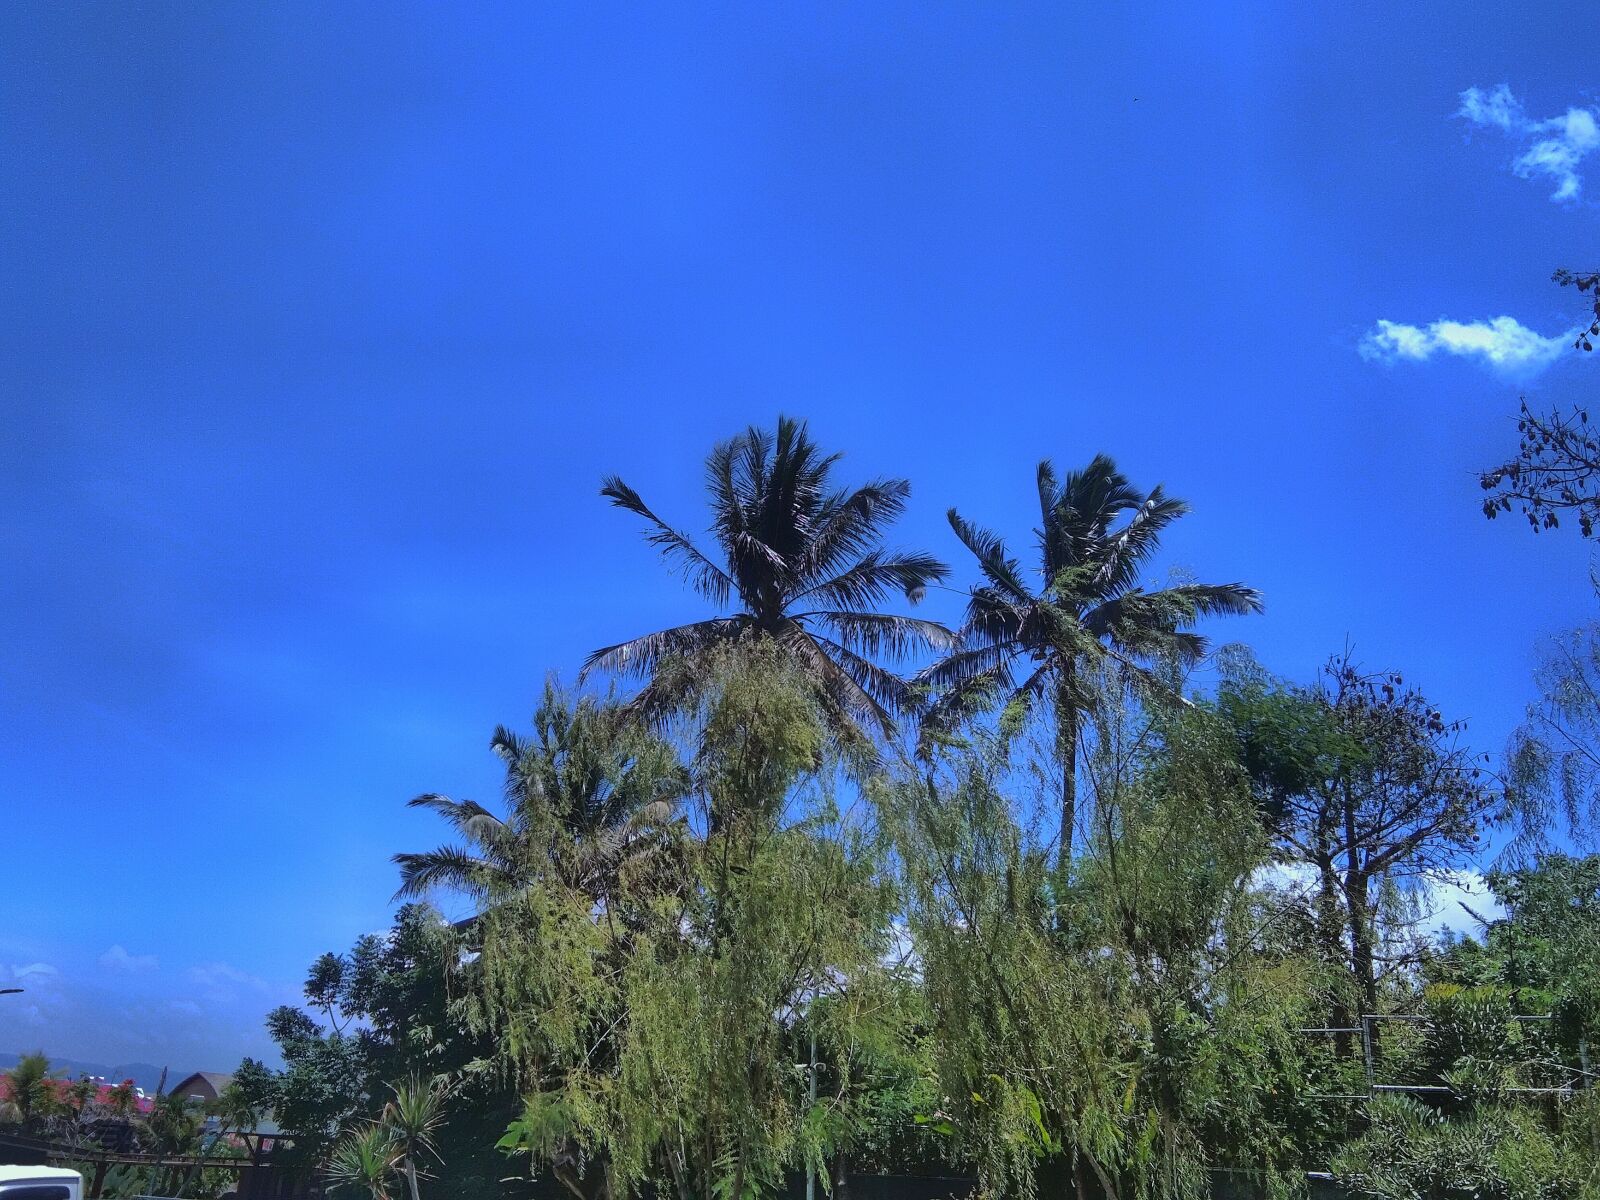 vivo 1807 sample photo. Tree, blue sky, shinny photography